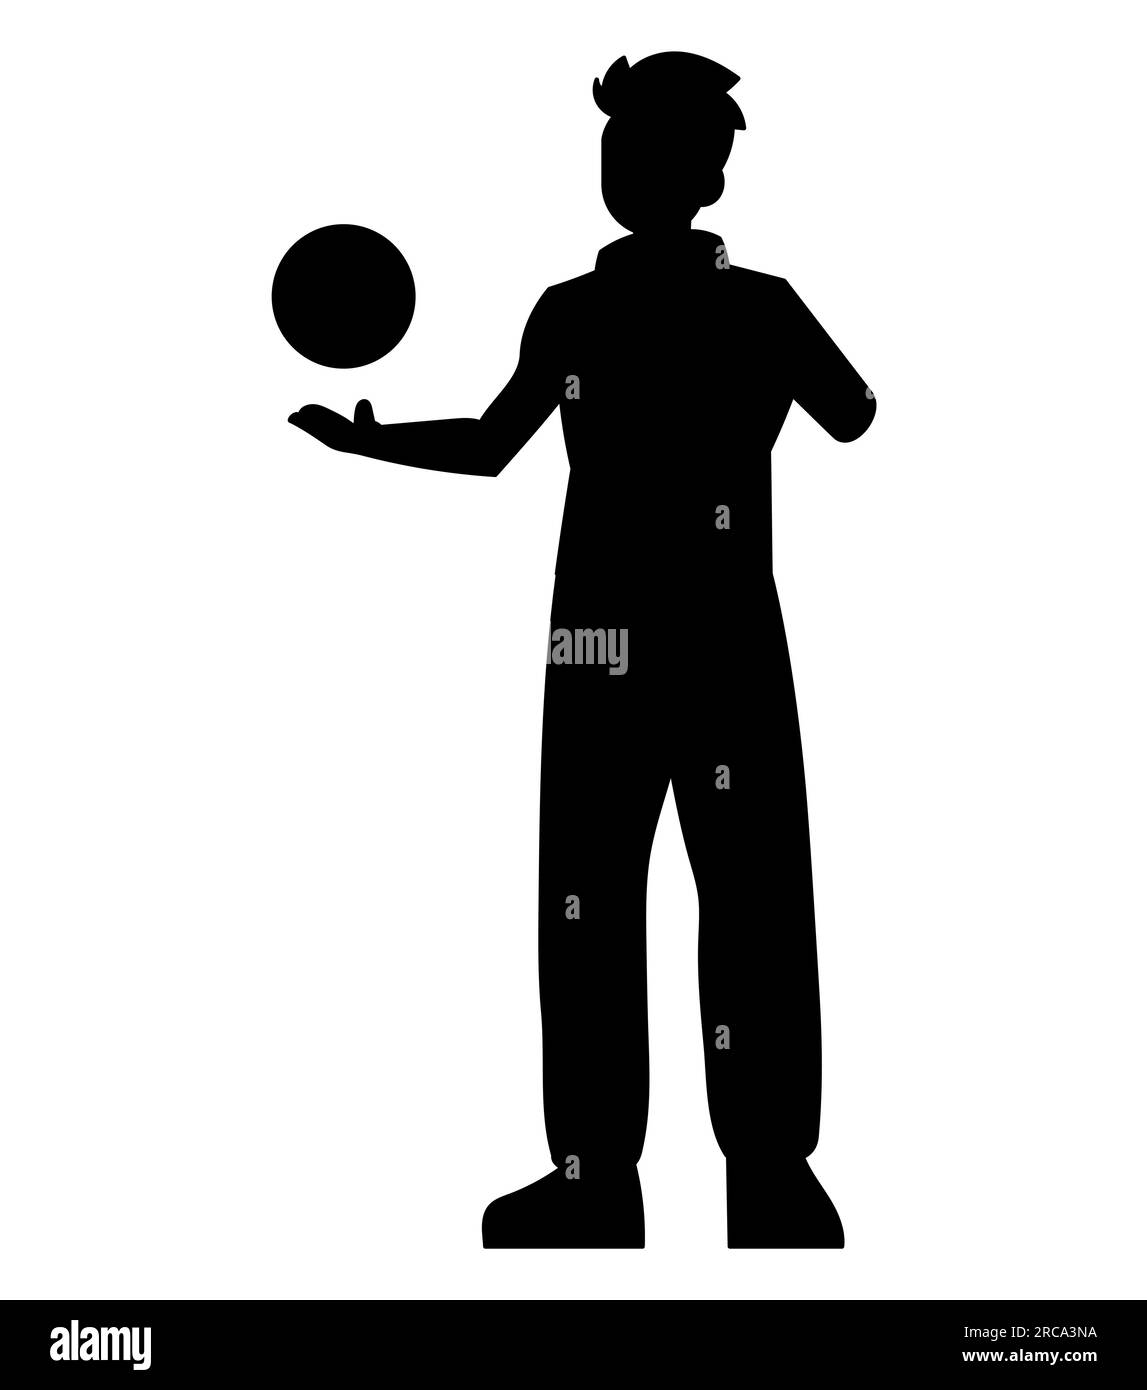 Schwarze Silhouette eines Jungen im Teenageralter, der mit einem Ball spielt, Basketballspieler, Spielsymbol, Vektordarstellung isoliert auf weißem Hintergrund Stock Vektor